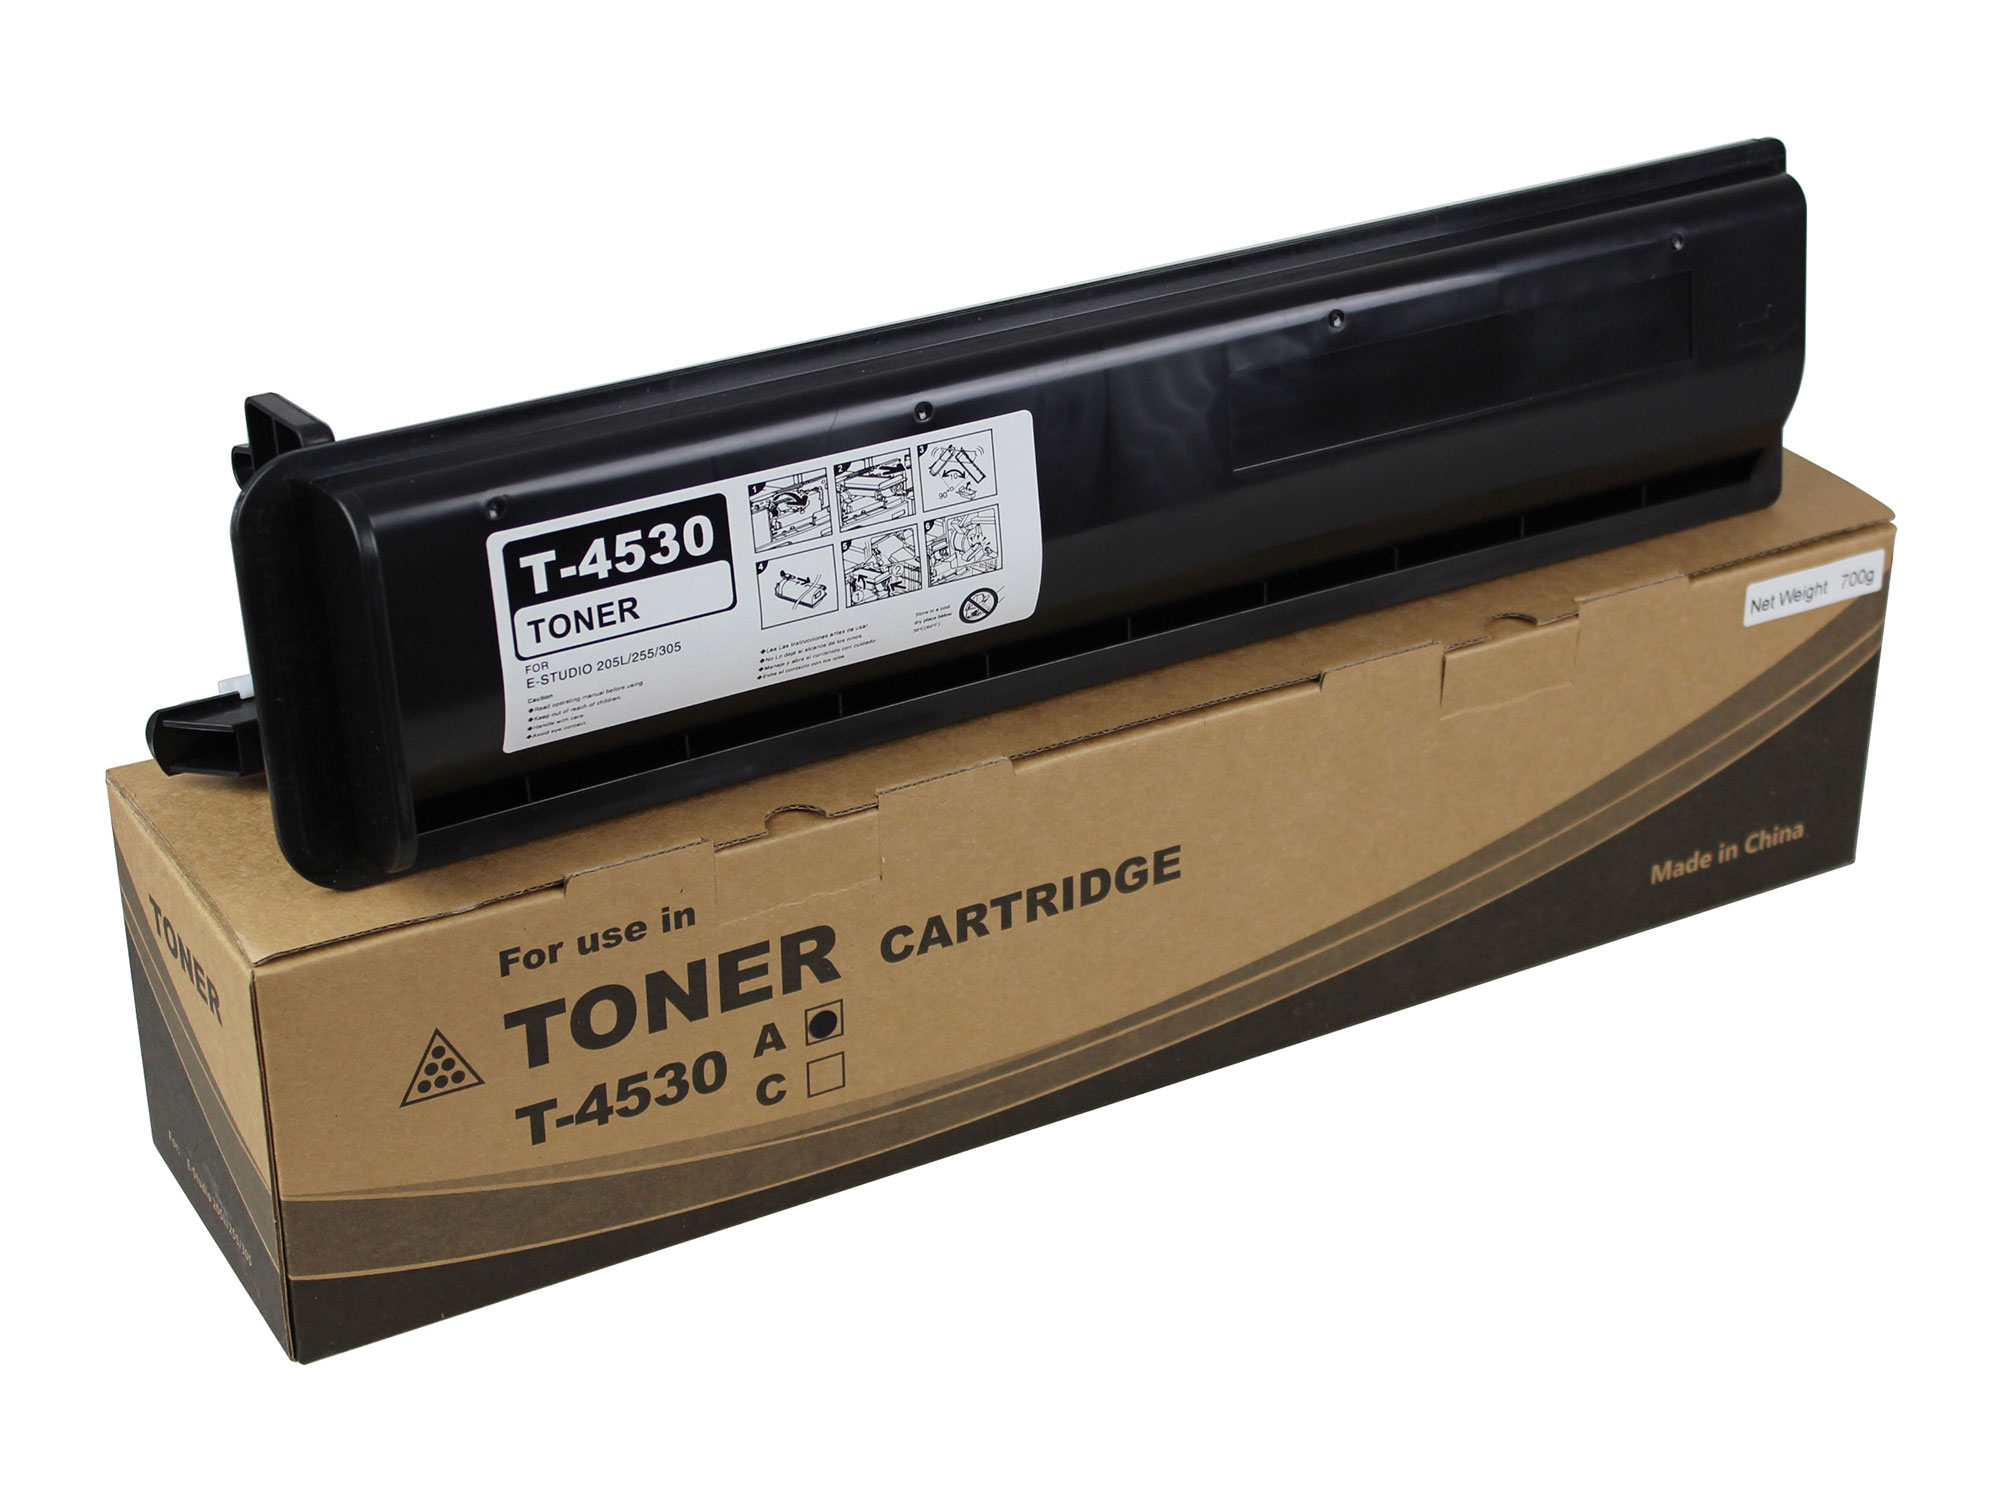 6AK00000131 T-4530 Toner Cartridge for Toshiba E-Studio 205L